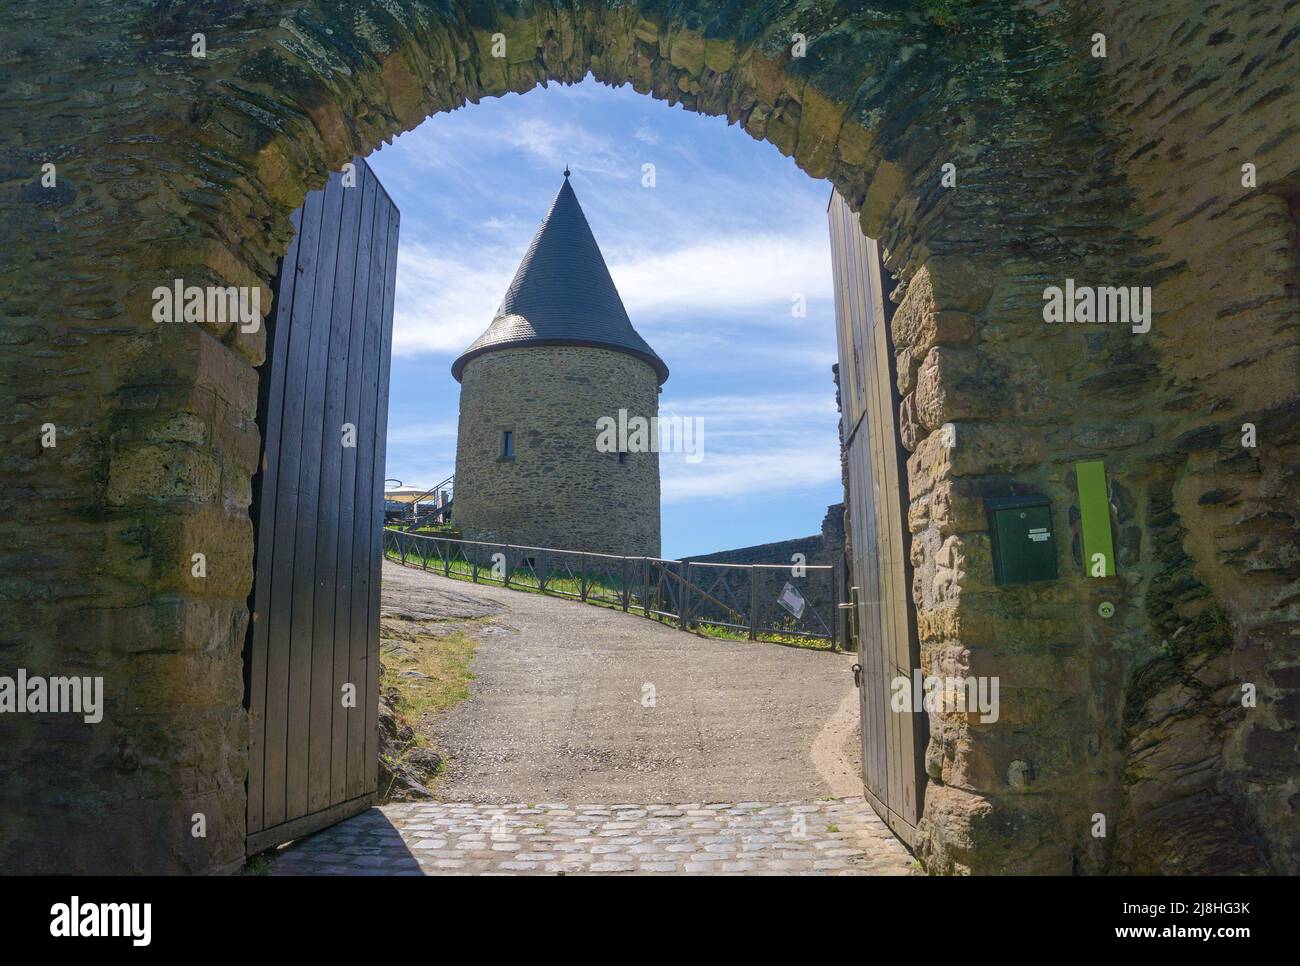 Eintritt zum Schloss Bourscheid, mittelalterlicher Schlosskomplex in Bourscheid, Diekirch, Ardennen, Luxemburg, Europa Stockfoto